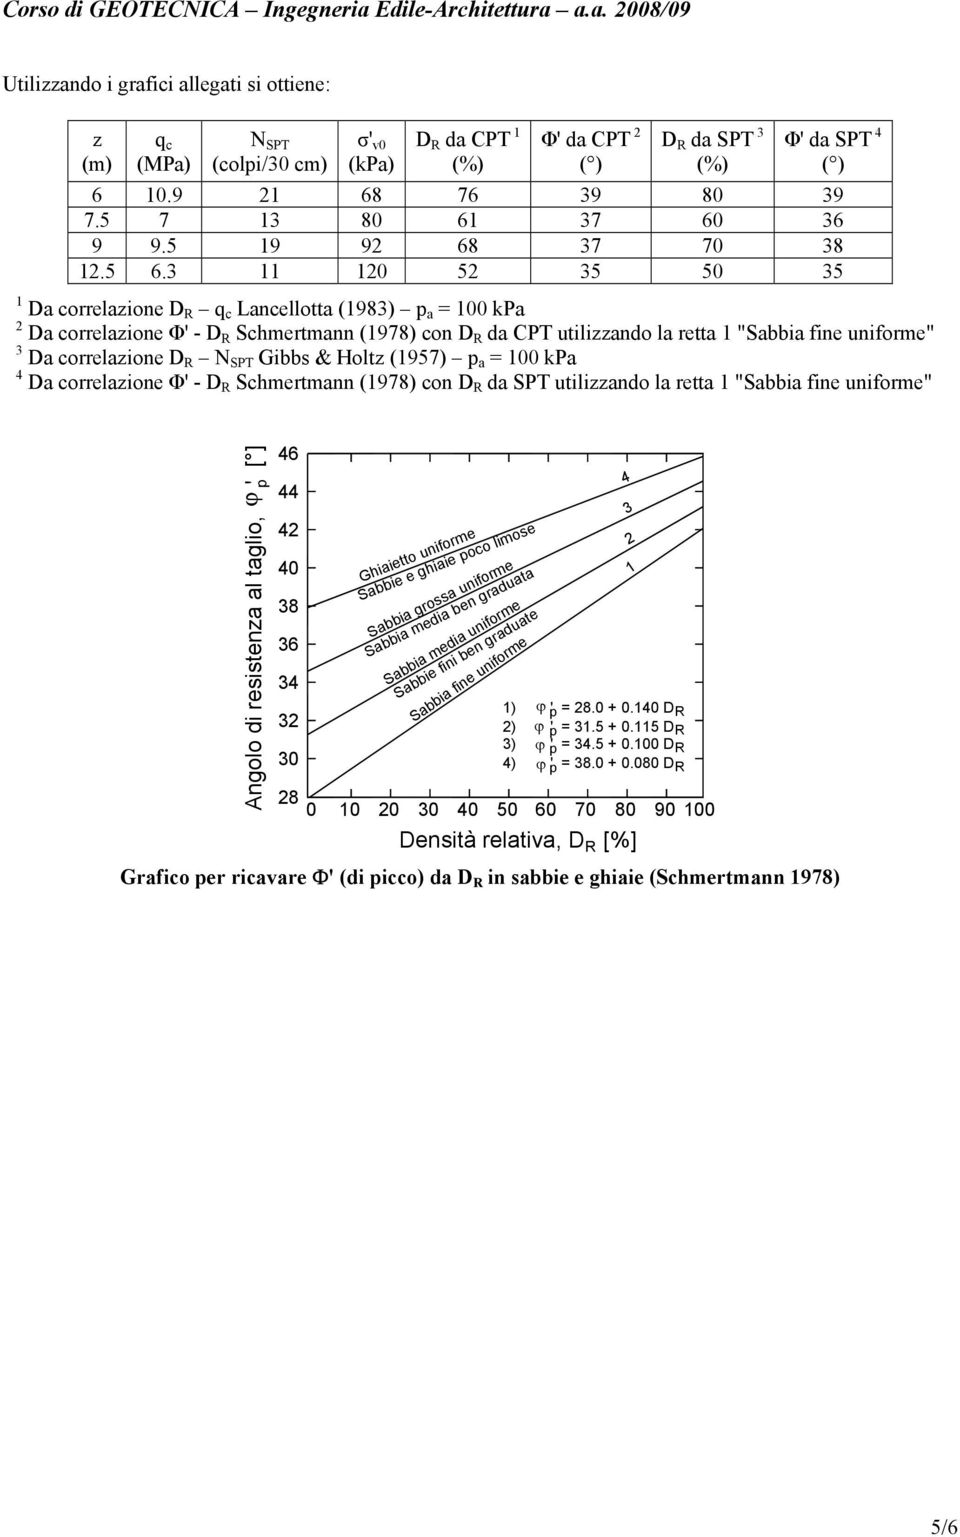 3 11 120 52 35 50 35 1 Da correlazione D R q c Lancellotta (1983) p a = 100 kpa 2 Da correlazione Φ' - D R Schmertmann (1978) con D R da CPT utilizzando la retta 1 "Sabbia fine uniforme" 3 Da